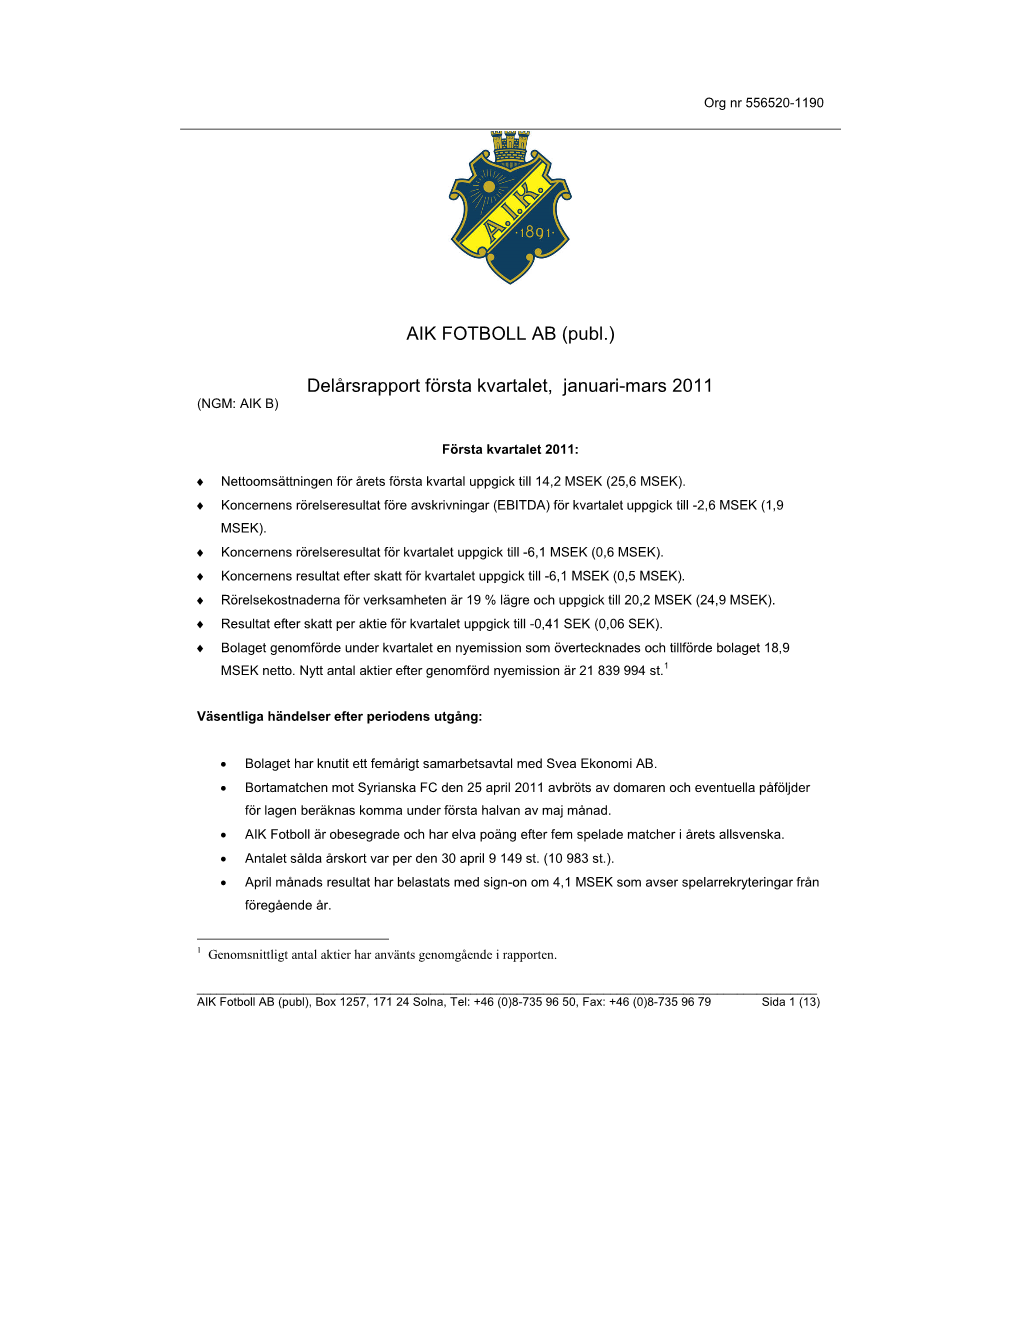 AIK FOTBOLL AB (Publ.) Delårsrapport Första Kvartalet